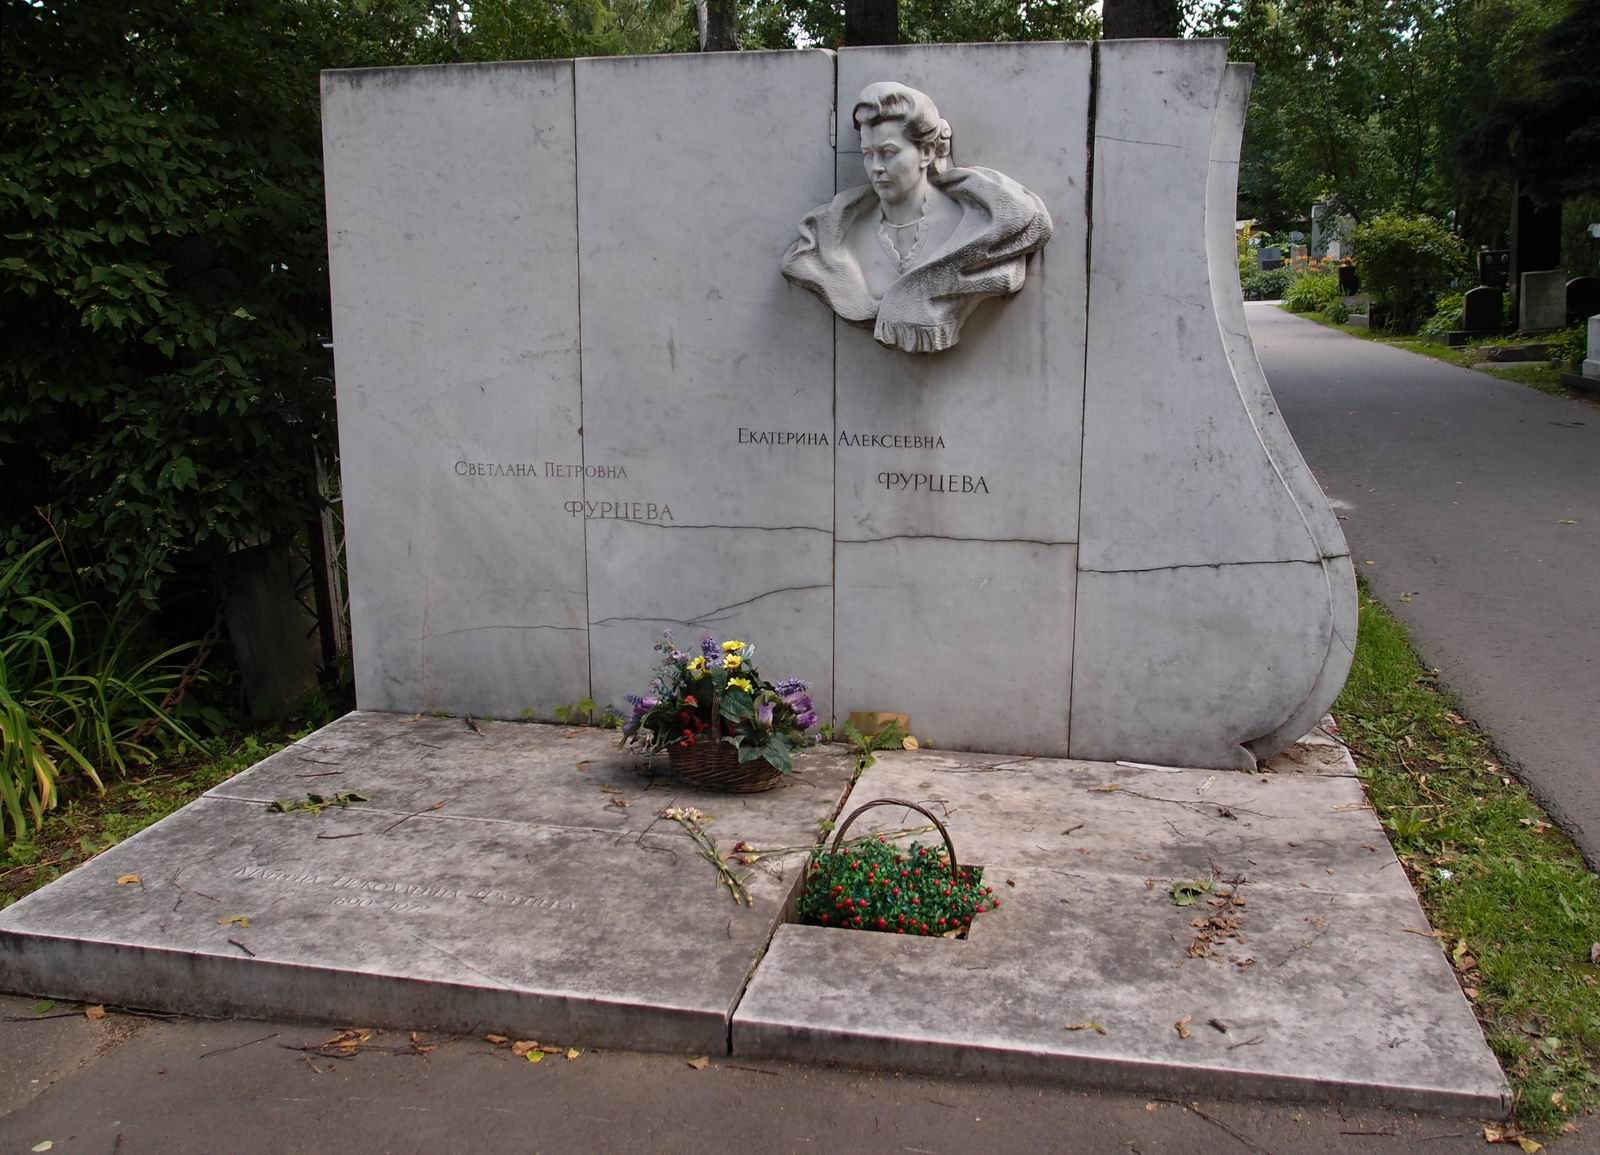 Памятник на могиле Фурцевой Е.А. (1910-1974), ск. Л.Кербель, на Новодевичьем кладбище (3-14-1). Нажмите левую кнопку мыши чтобы увидеть фрагмент памятника.